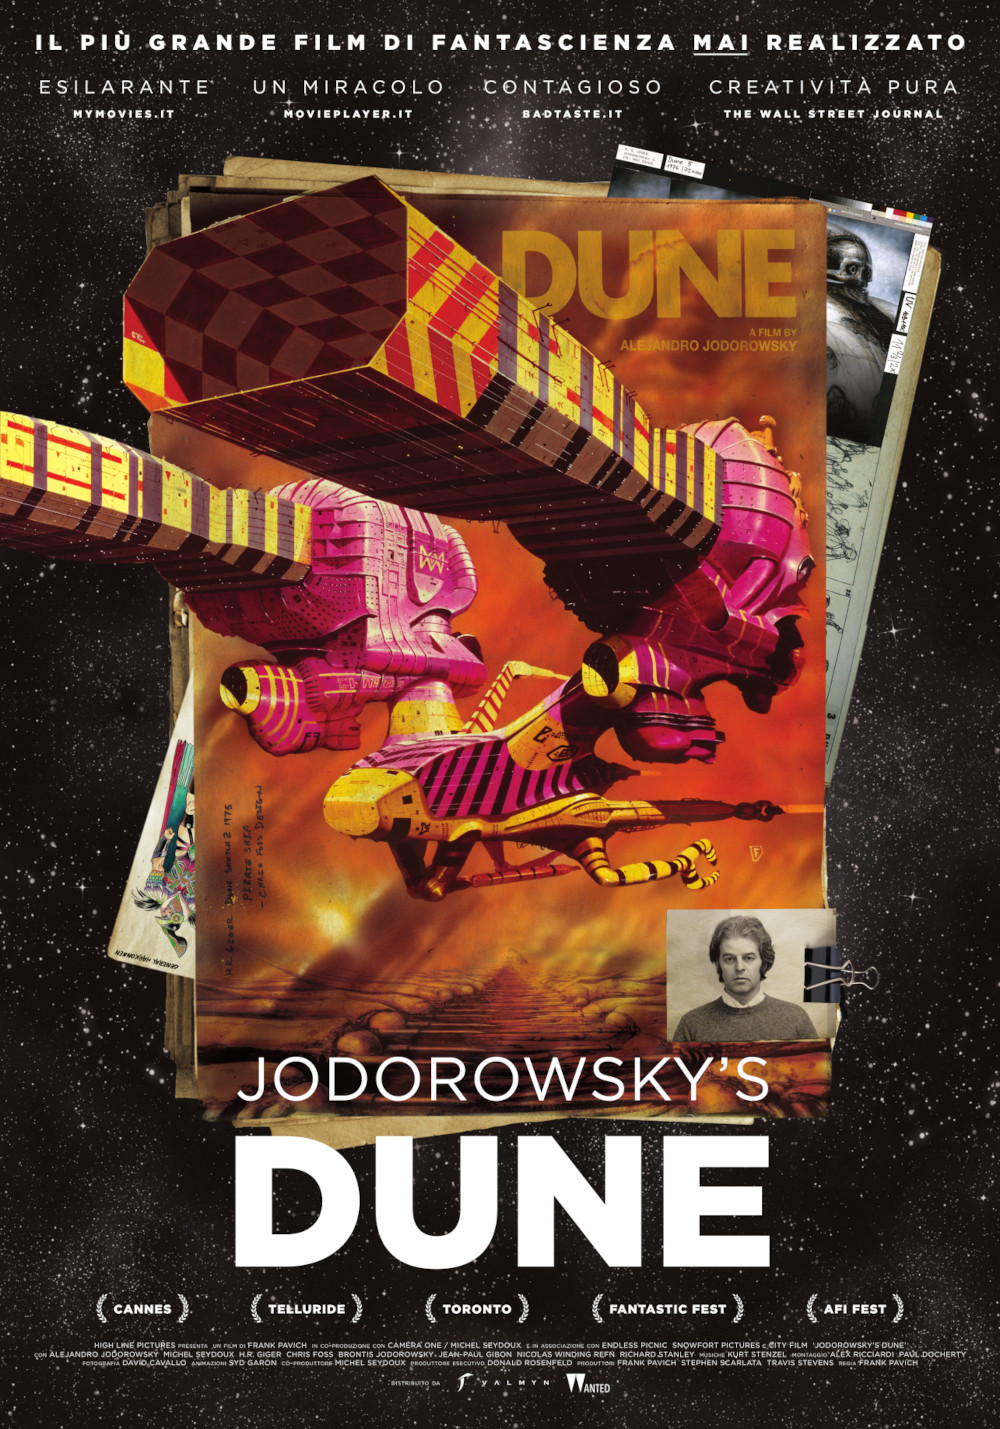  Dall'articolo: Jodorowsky's Dune, il poster italiano del film.